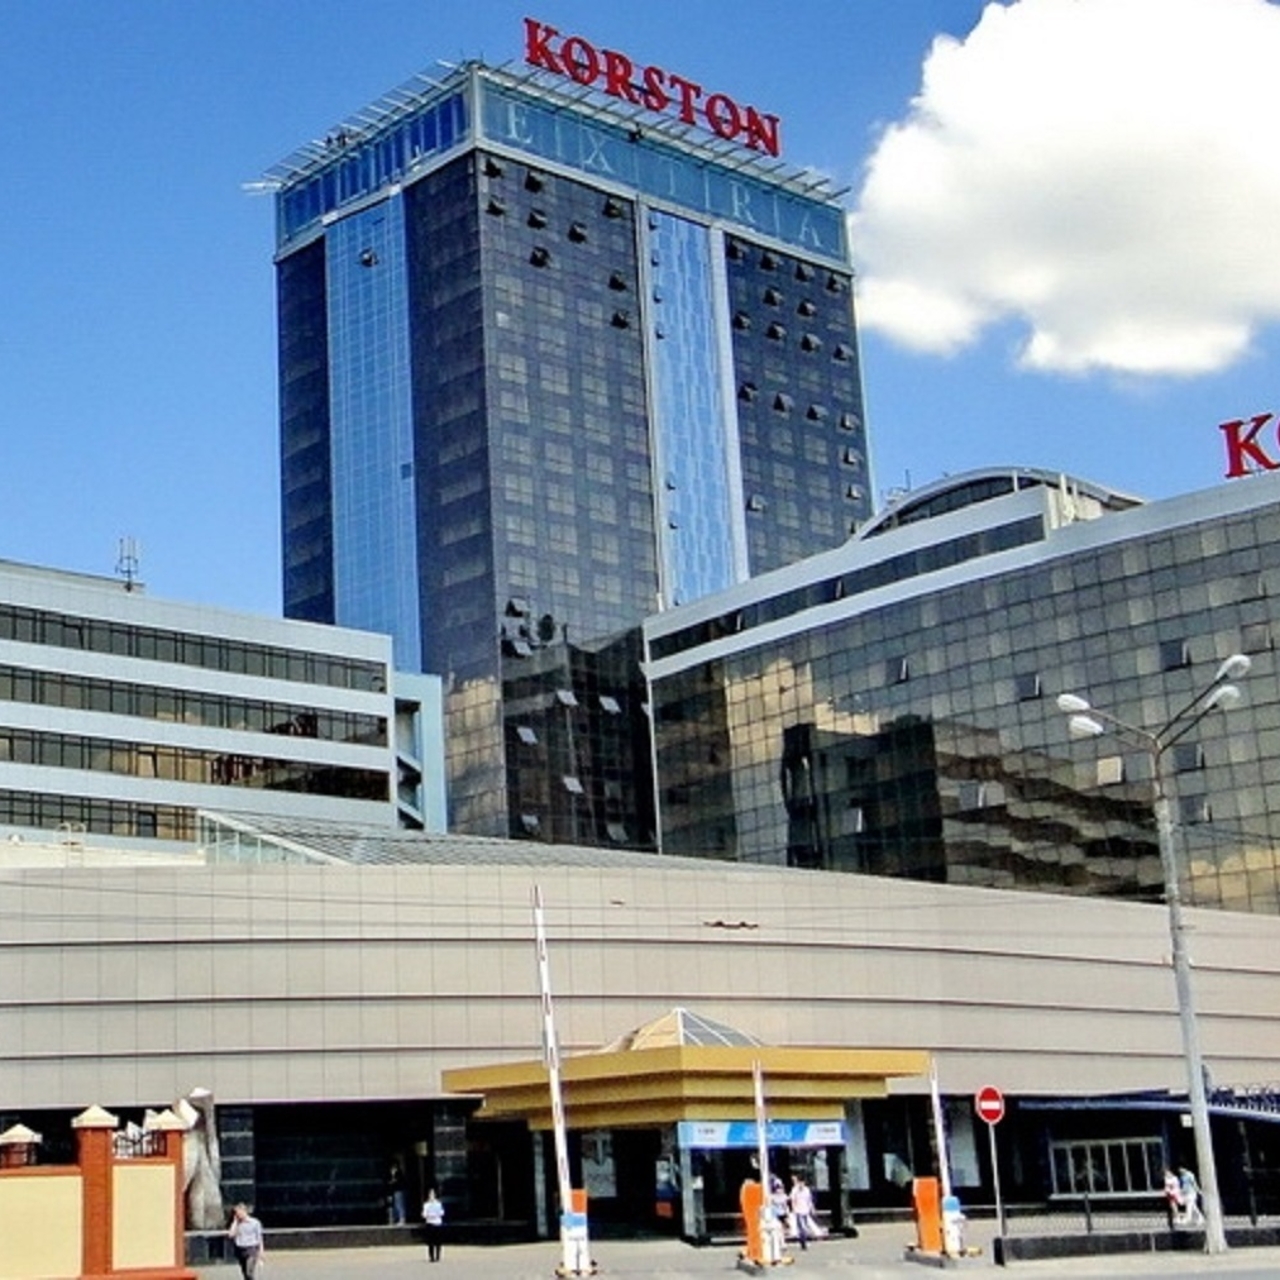 Hotel Korston Tower - 4 HRS star hotel in Kazan' (Tatarstan Republic)